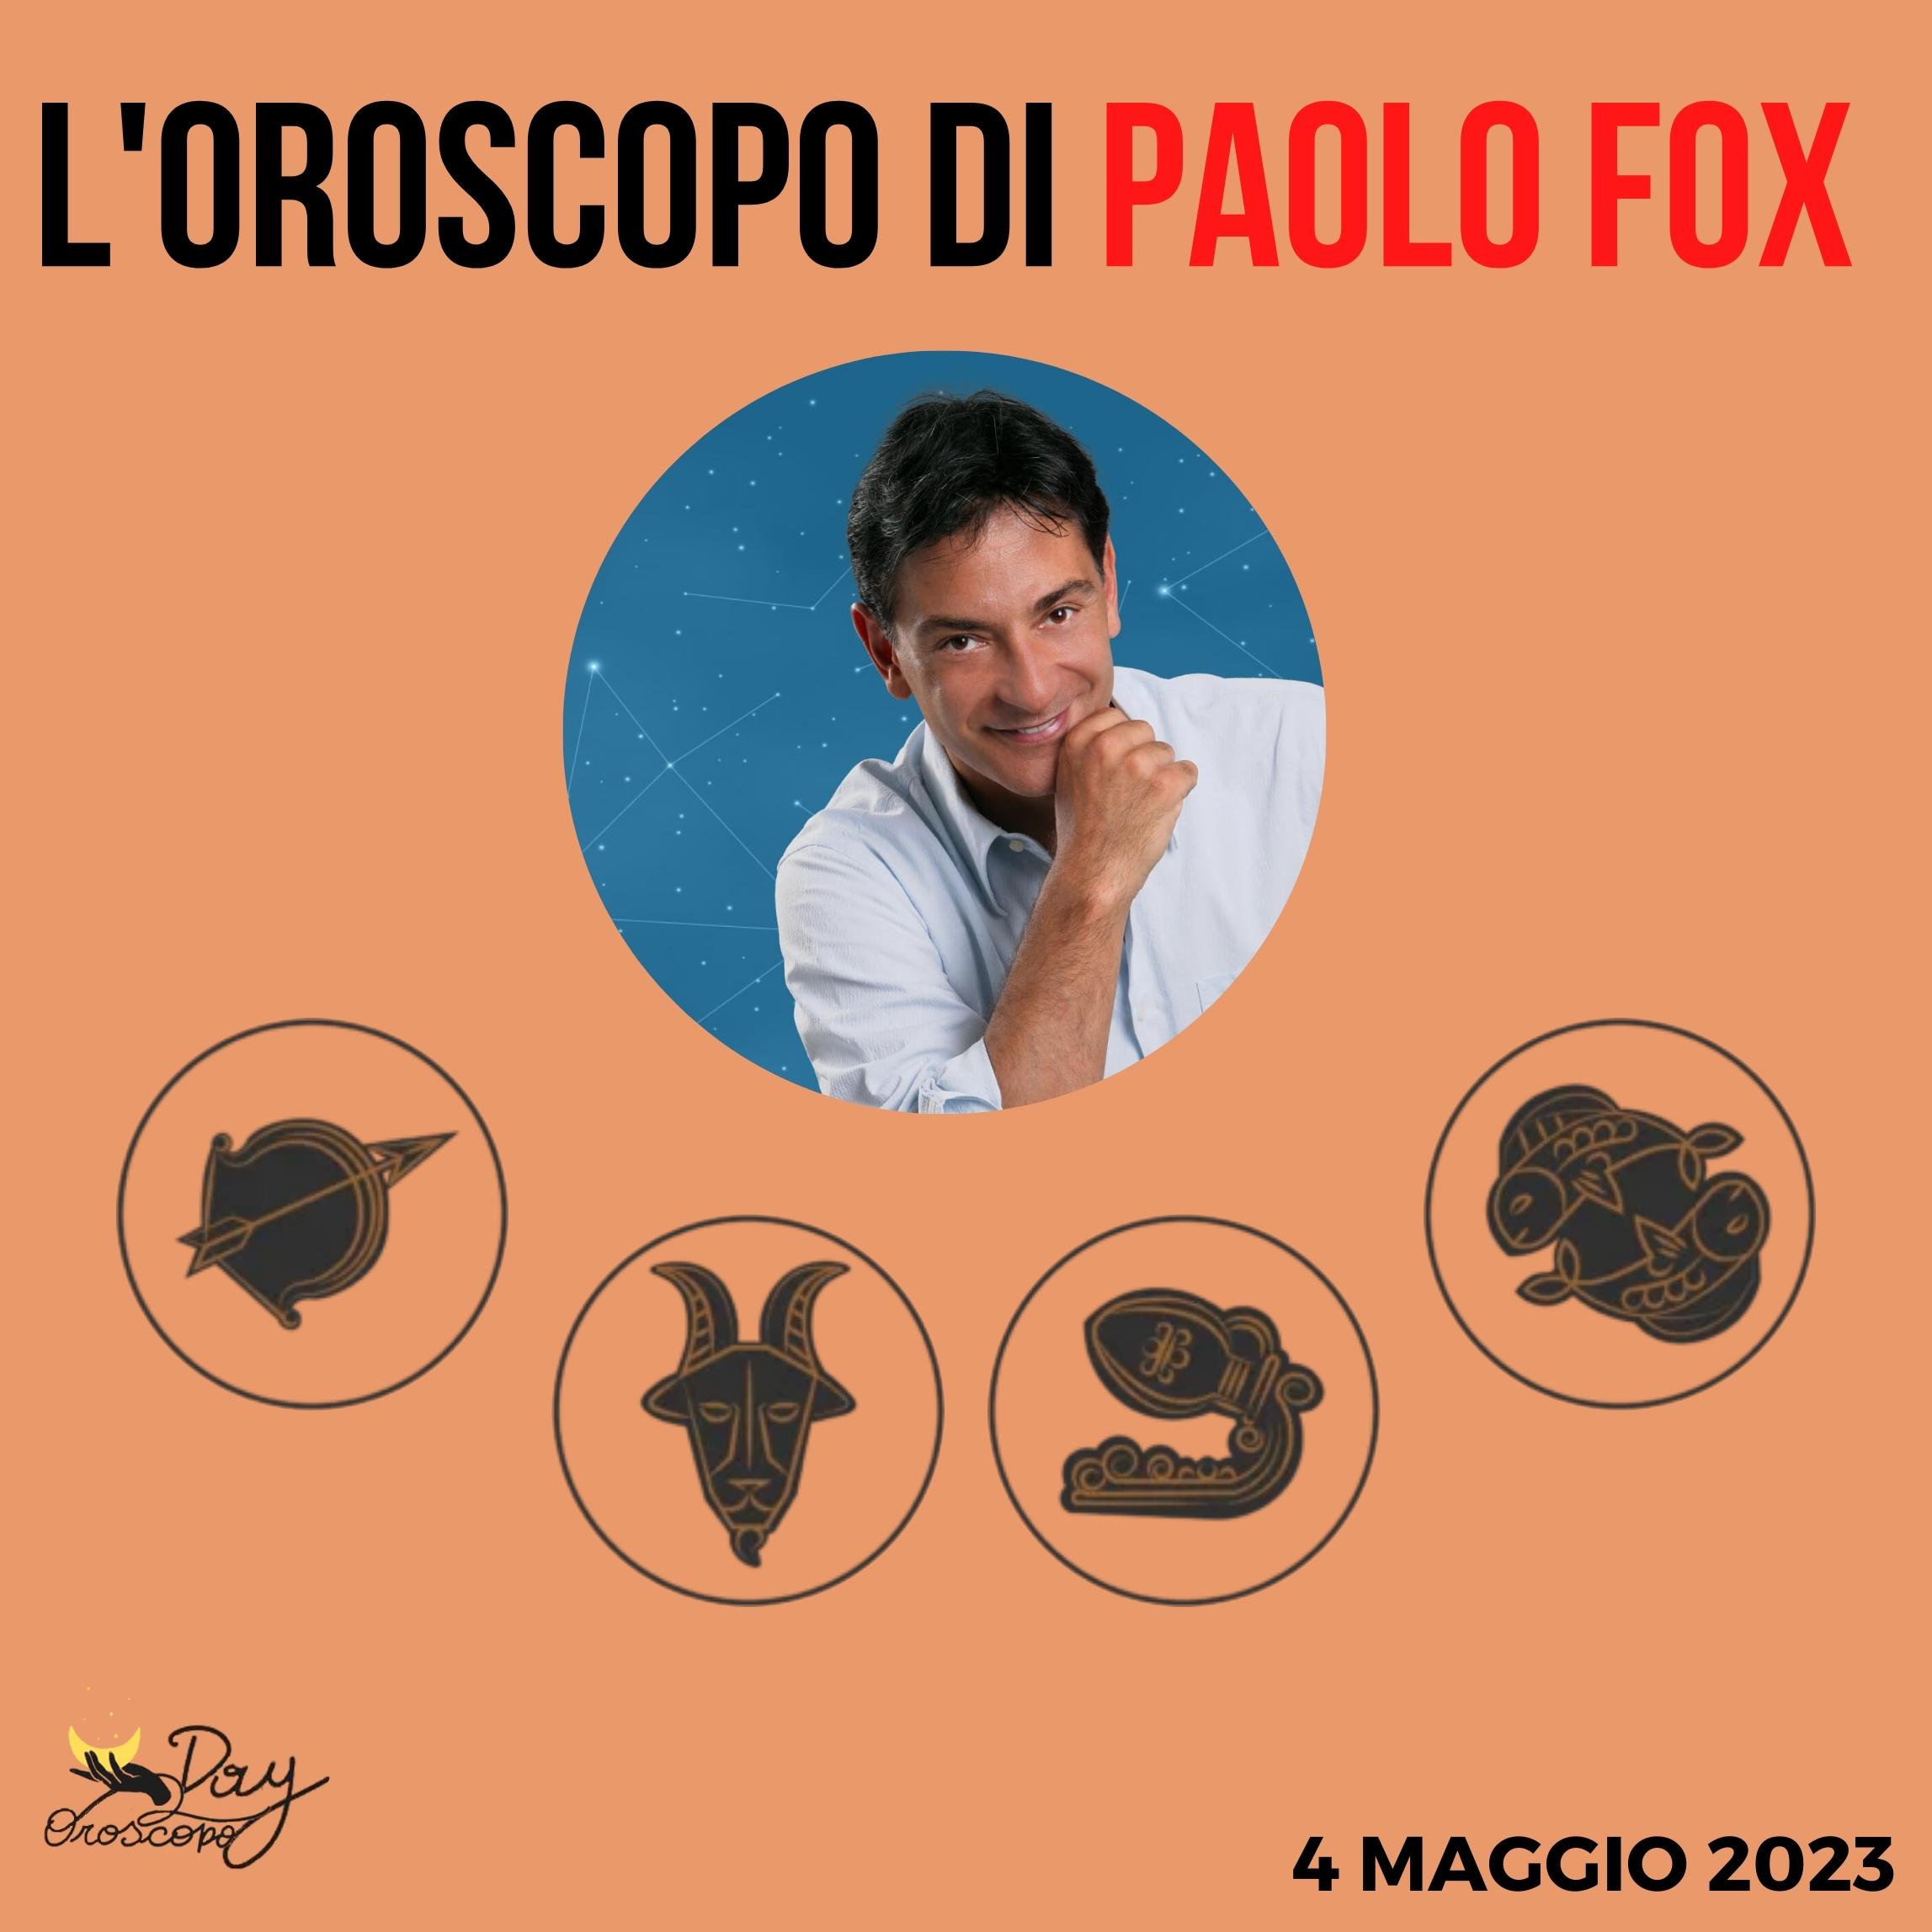 Oroscopo oggi domani Paolo Fox 4 maggio Sagittario Capricorno Acquario Pesci